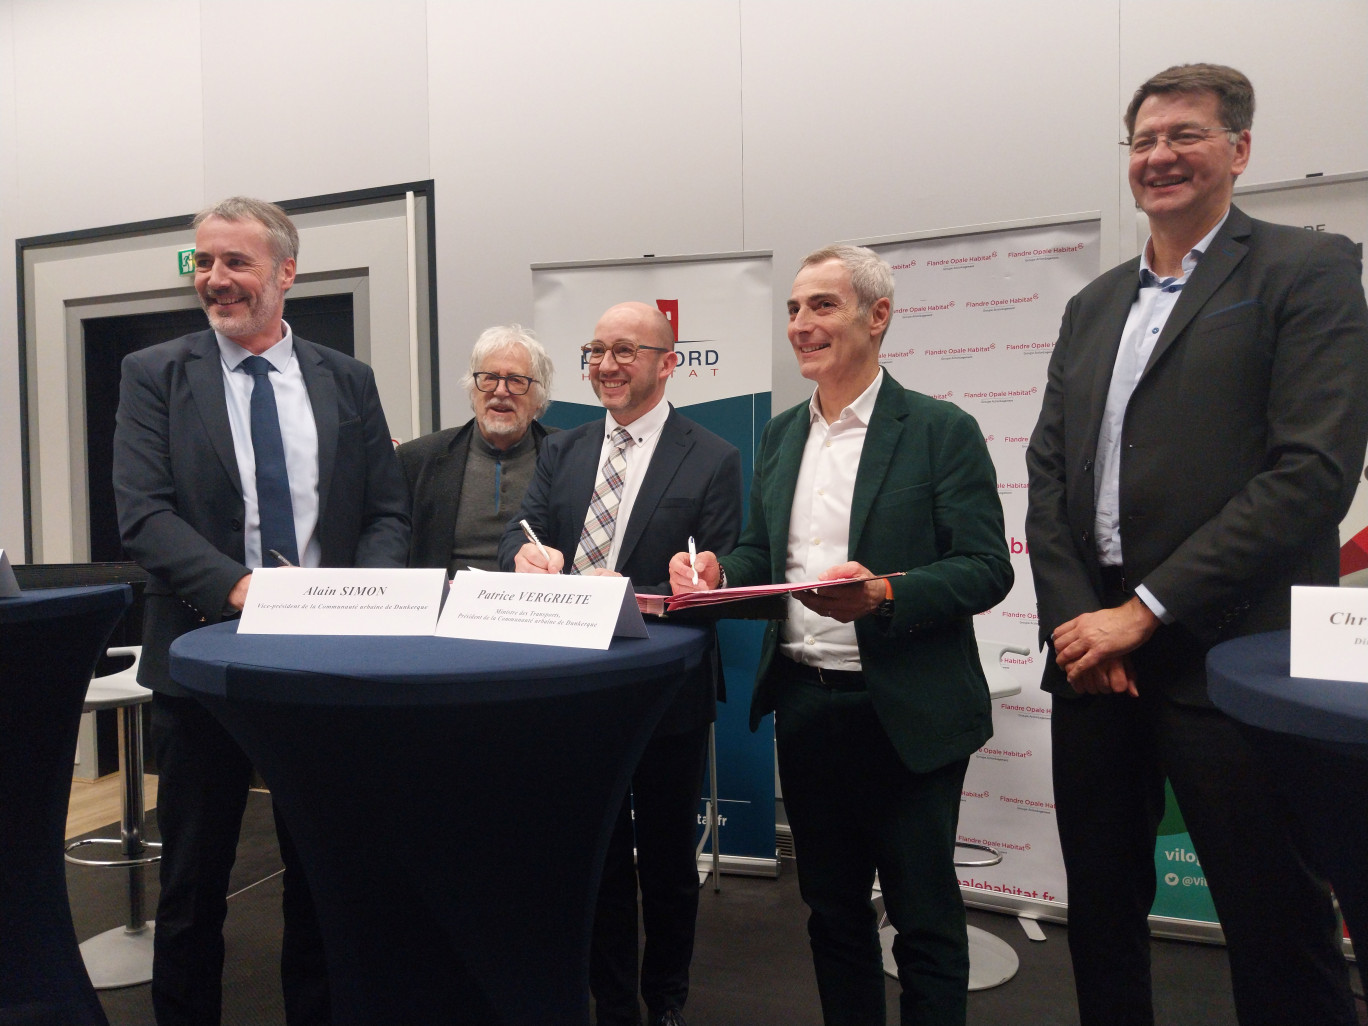 Les trois bailleurs sociaux, Flandre Opale Habitat, Partenord Habitat et Vilogia, signent leur charte de partenariat à l'hôtel communautaire le 31 mars dernier.